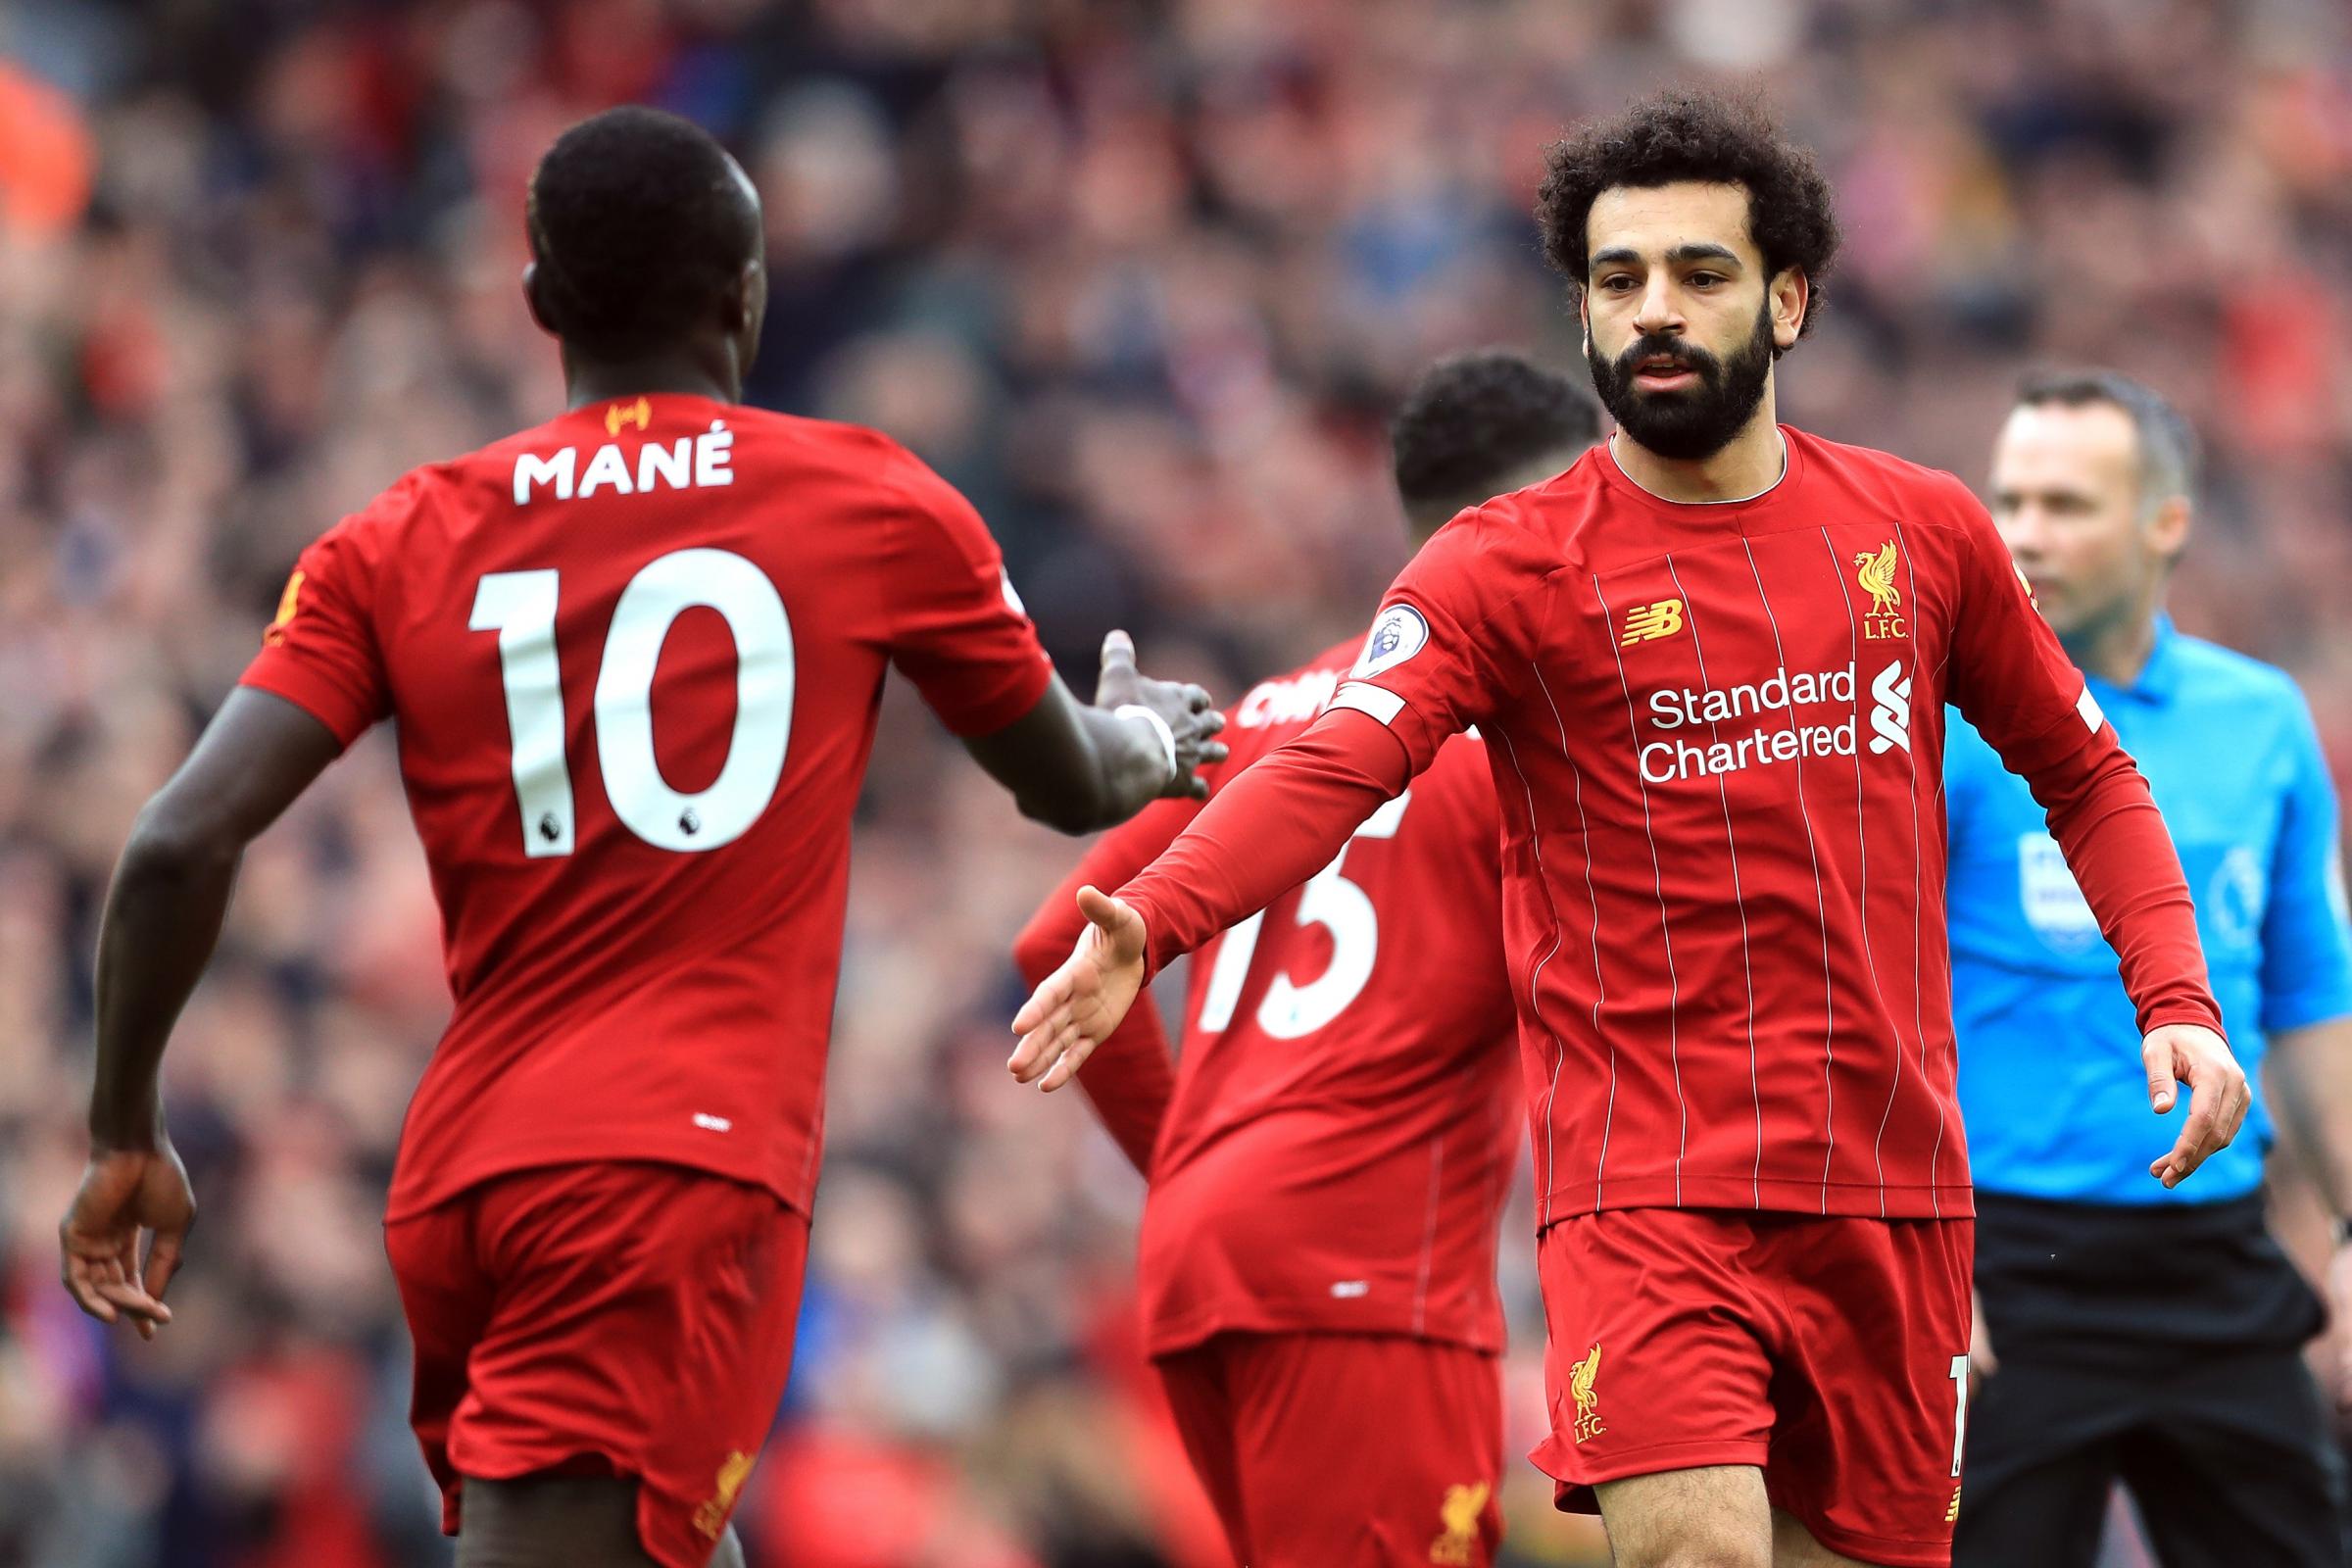 Une rencontre décisive entre Mané, Salah et Liverpool sur leur avenir en vue